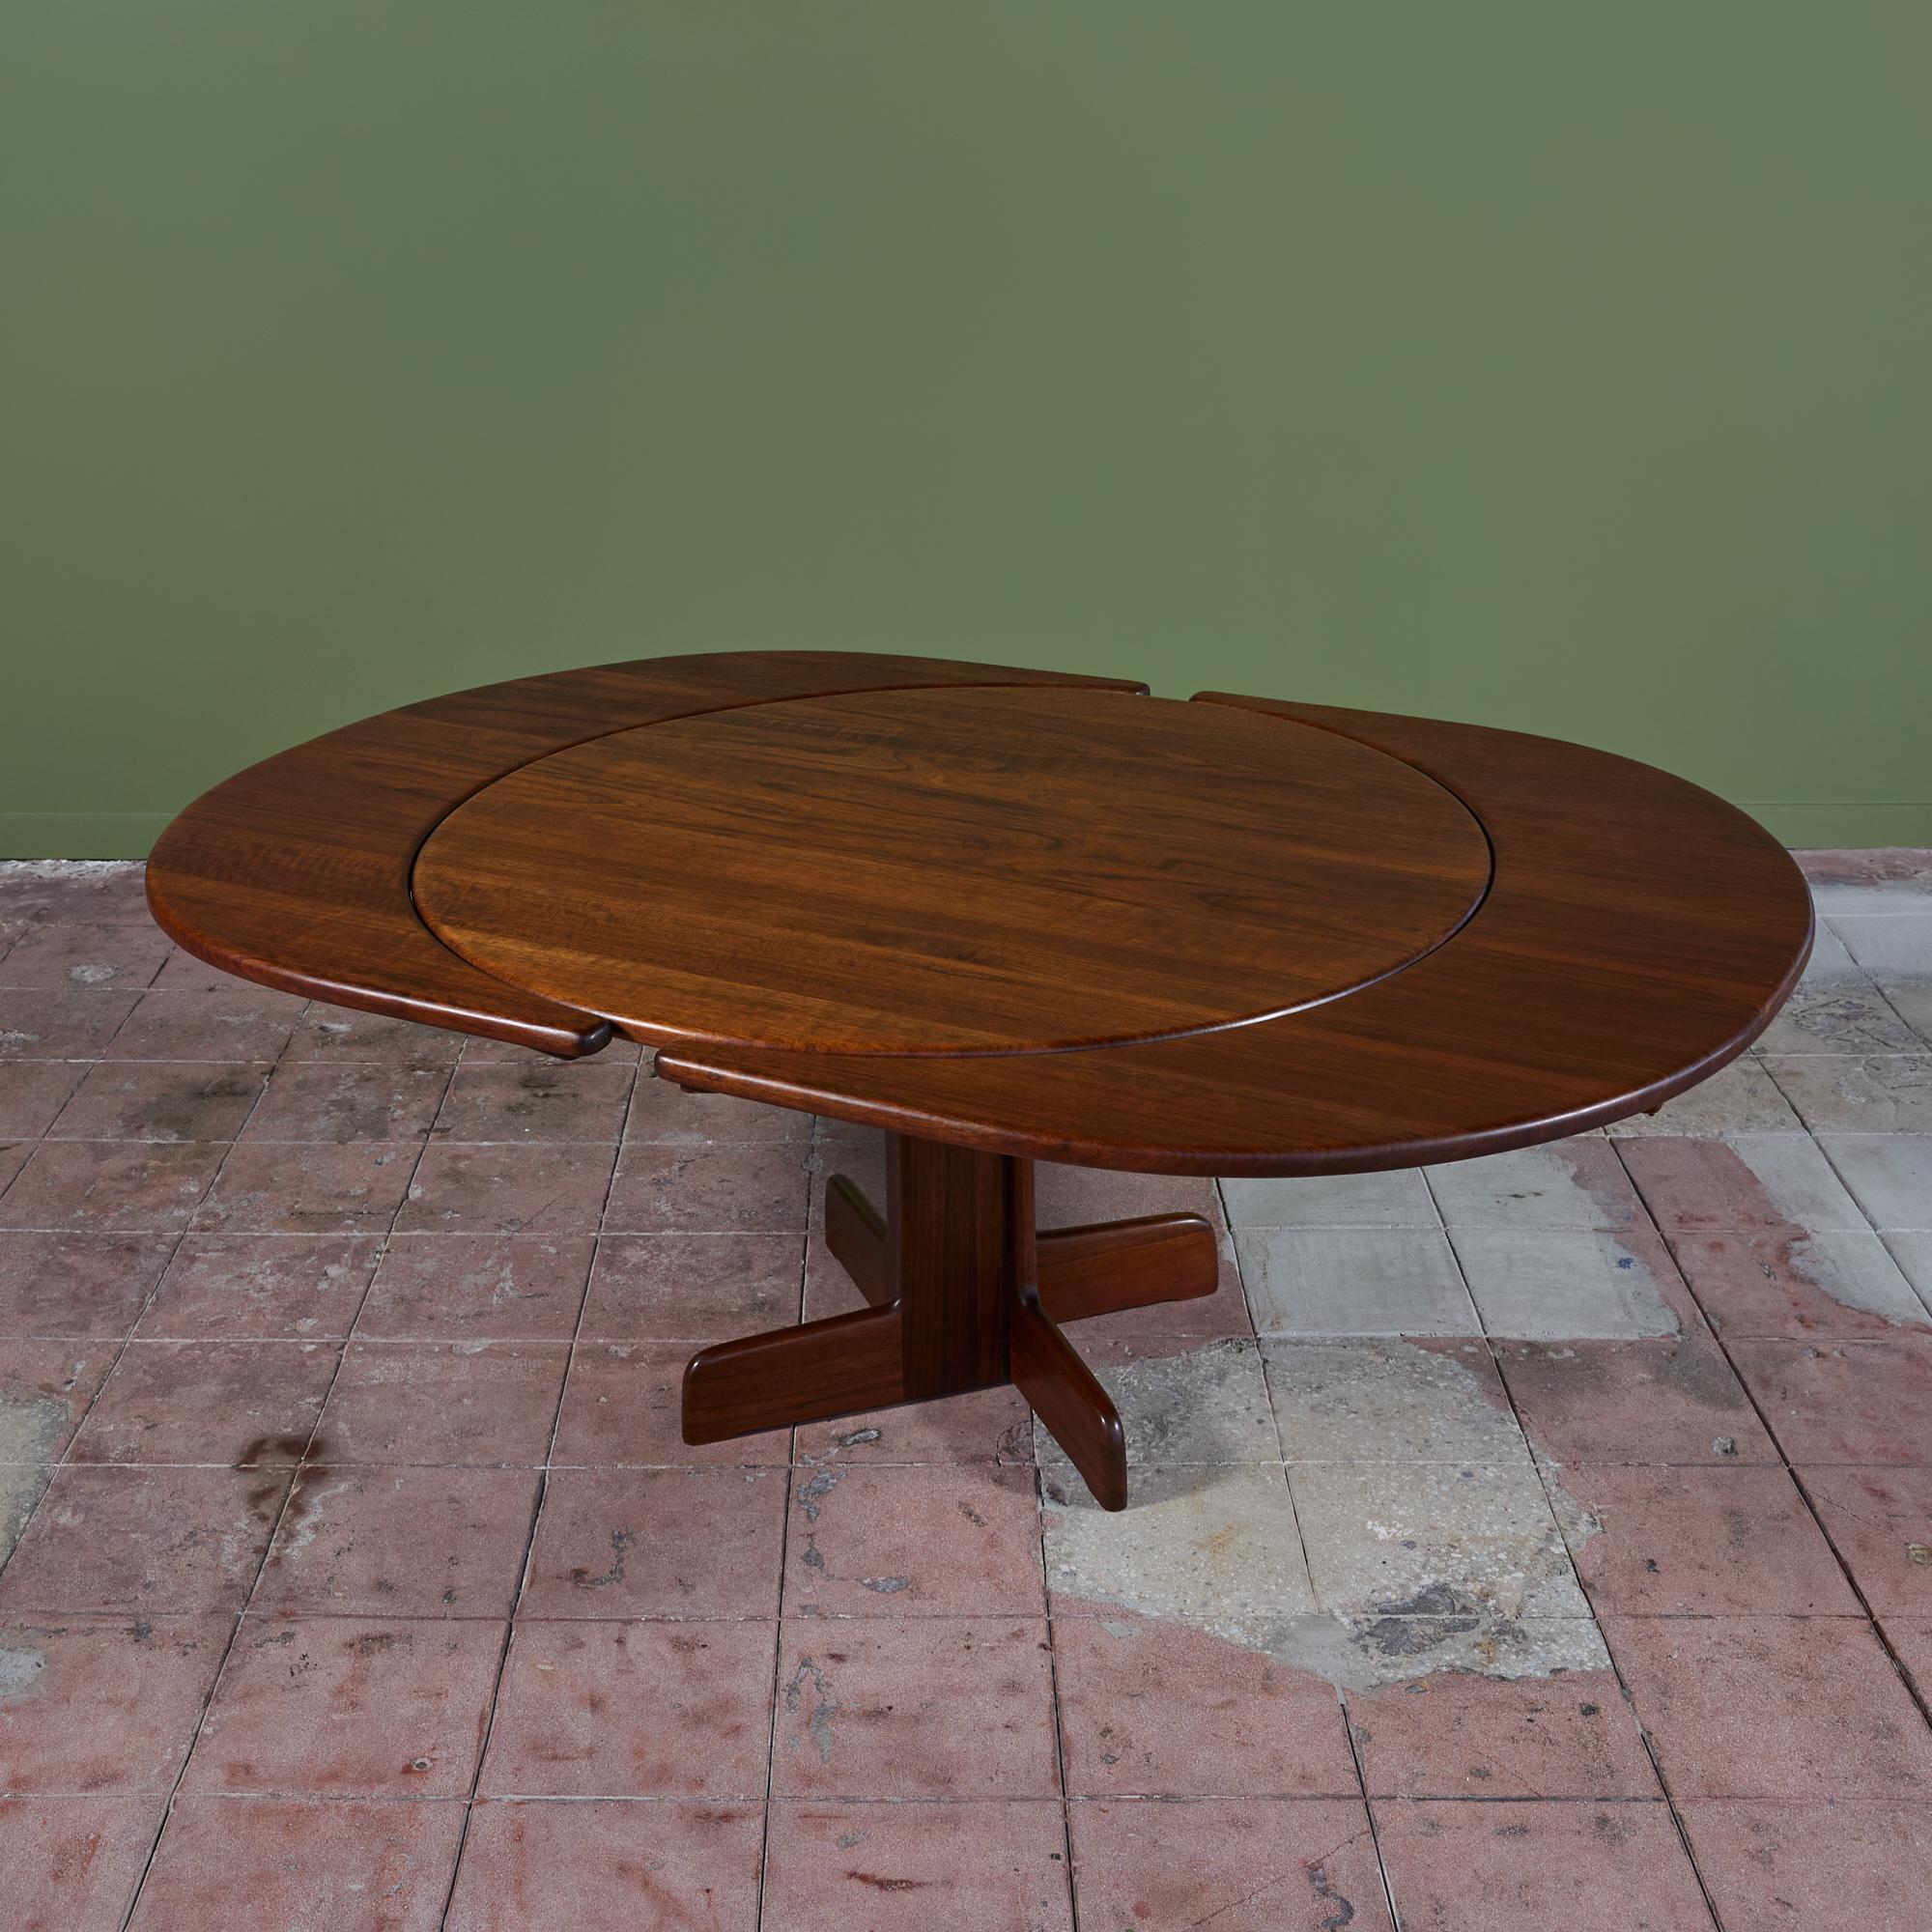 Table de salle à manger de fabrication américaine, C.C., par Gerald McCabe. La table présente un plateau rond situé sur un socle en Shedua massif. La table est livrée avec deux feuilles en forme de croissant qui se fixent sur les côtés extérieurs de